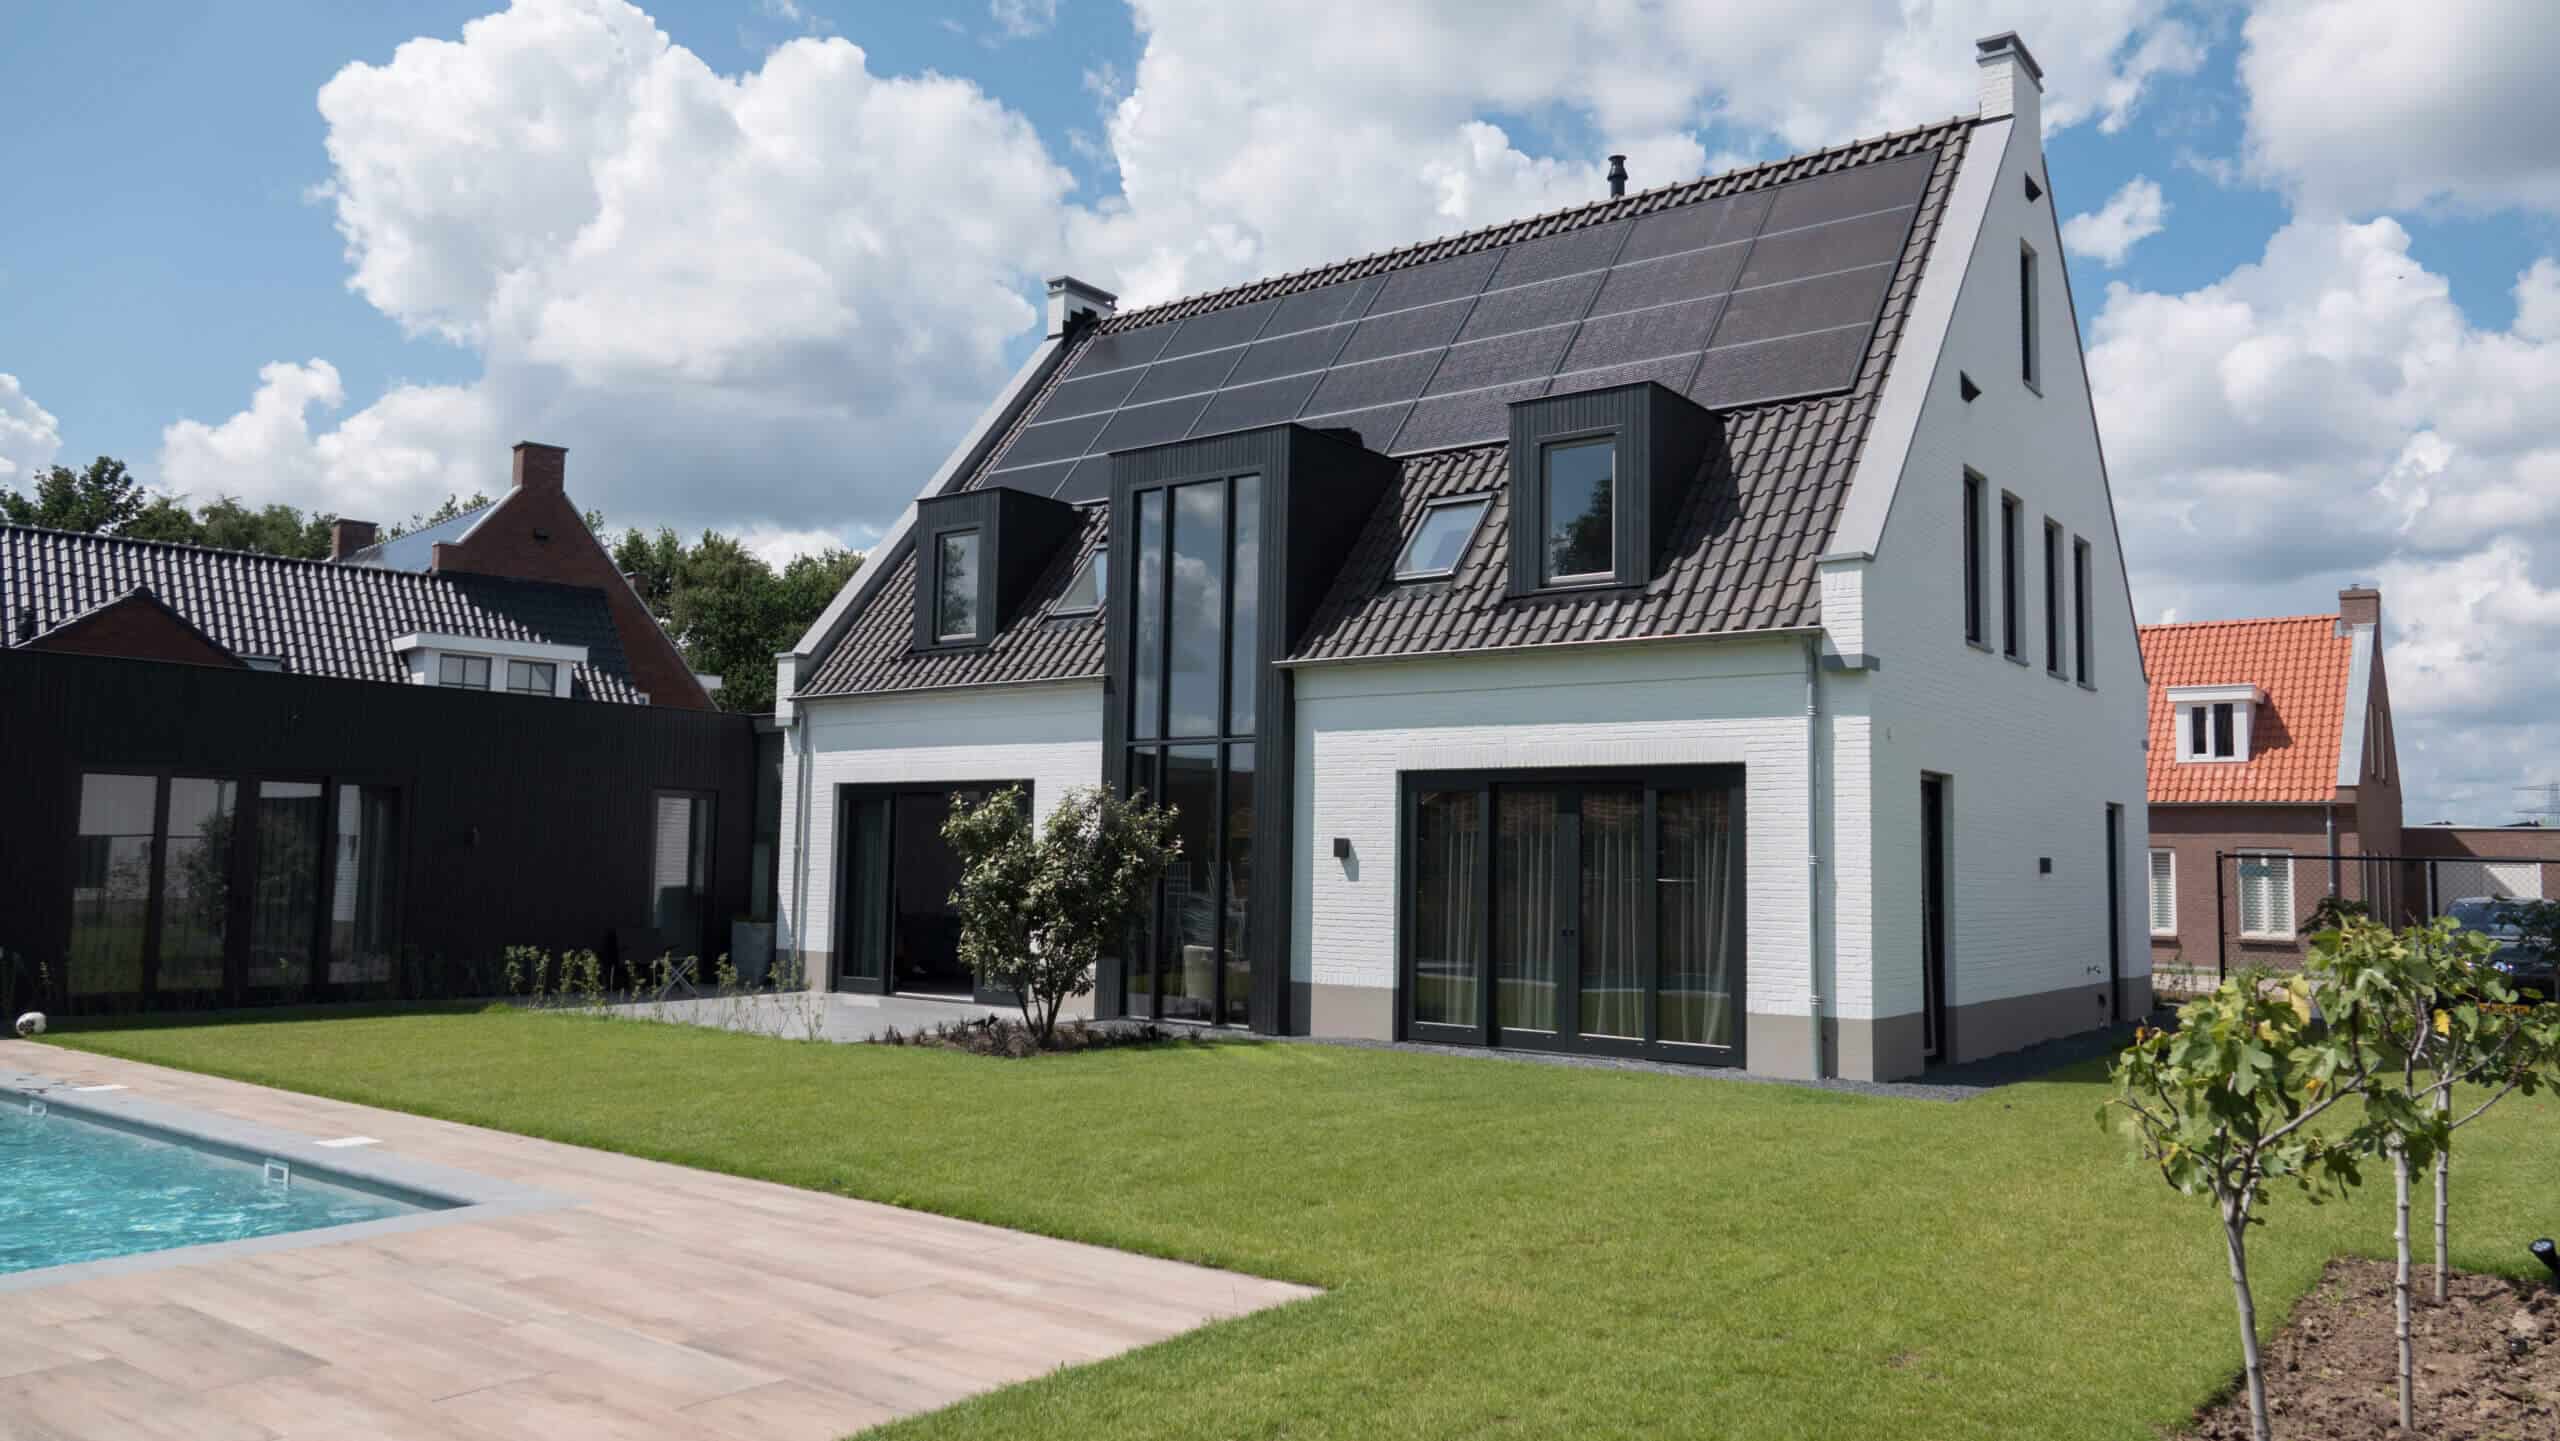 energieneutrale woning met zwarte solarwatt panelen achterkant huis op een schuin dak gemonteerd